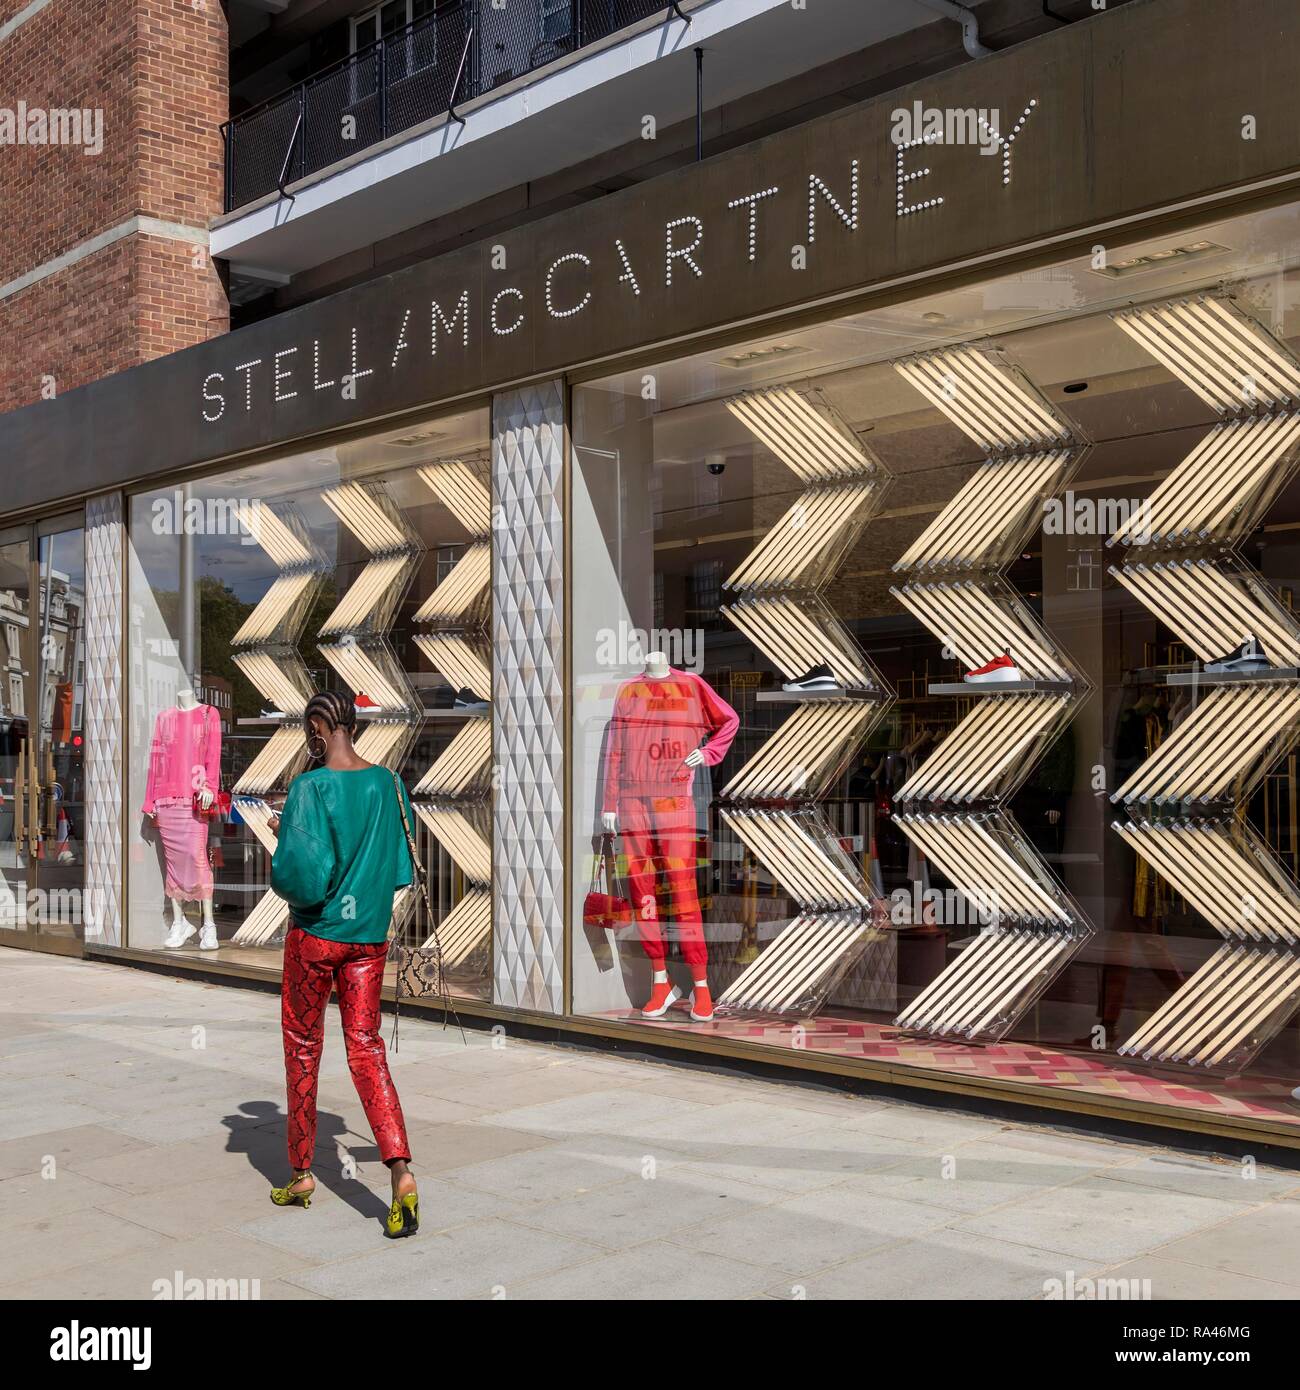 Boutique de créateur de mode de Stella Mc Cartney, Kensington, Londres, Royaume-Uni Banque D'Images